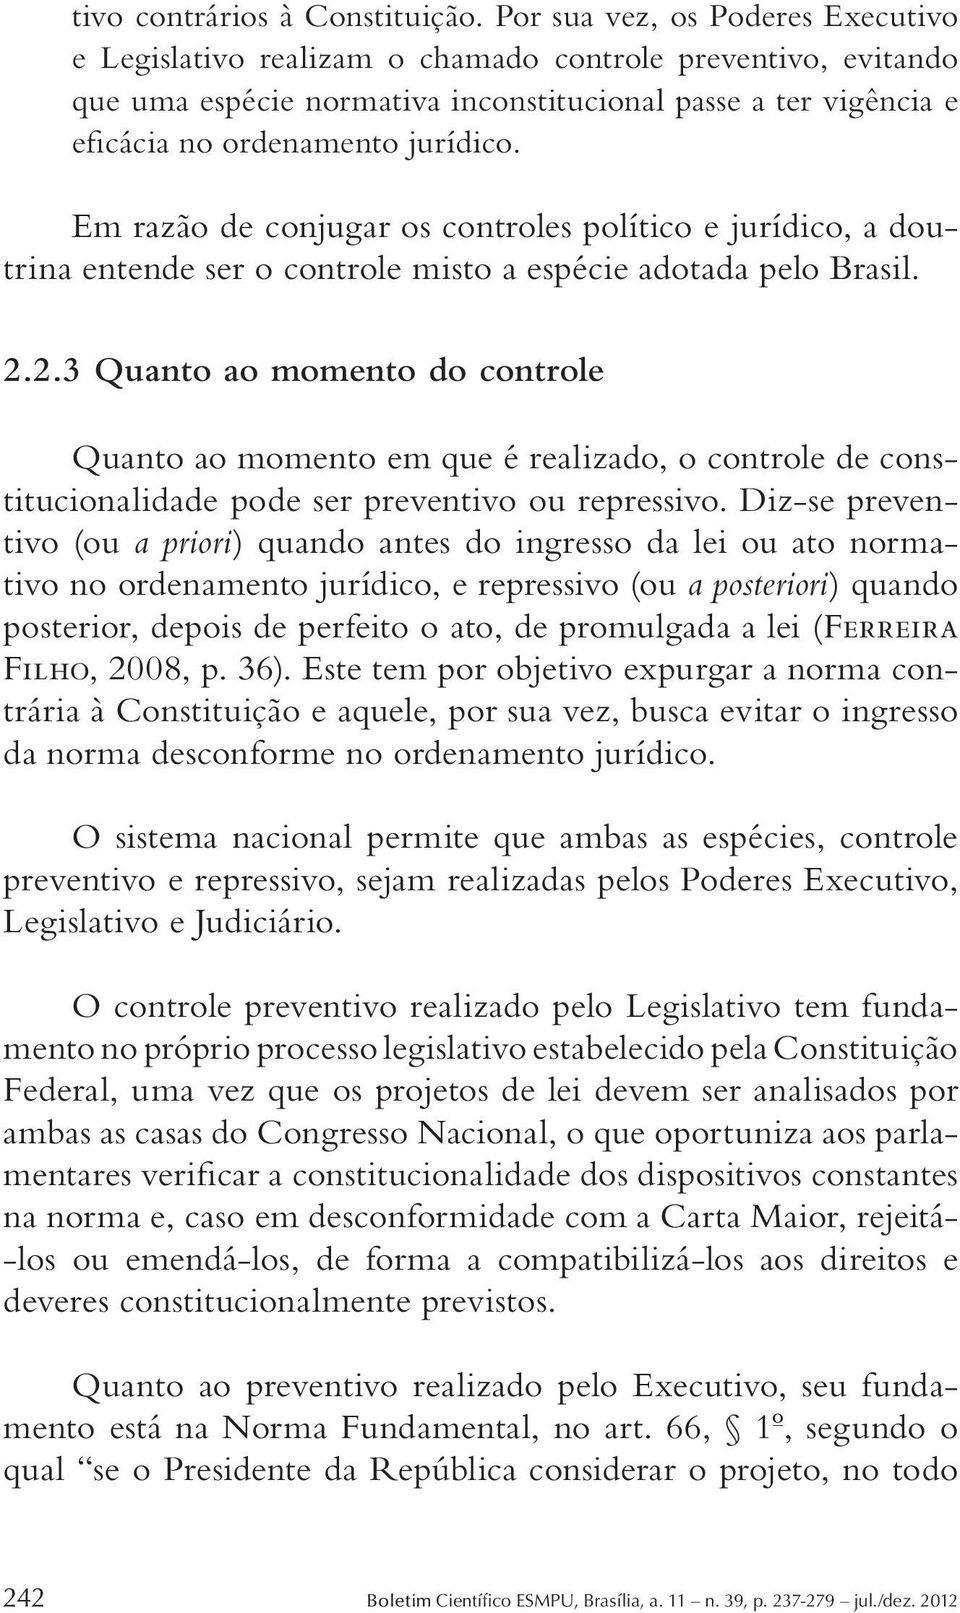 Em razão de conjugar os controles político e jurídico, a doutrina entende ser o controle misto a espécie adotada pelo Brasil. 2.